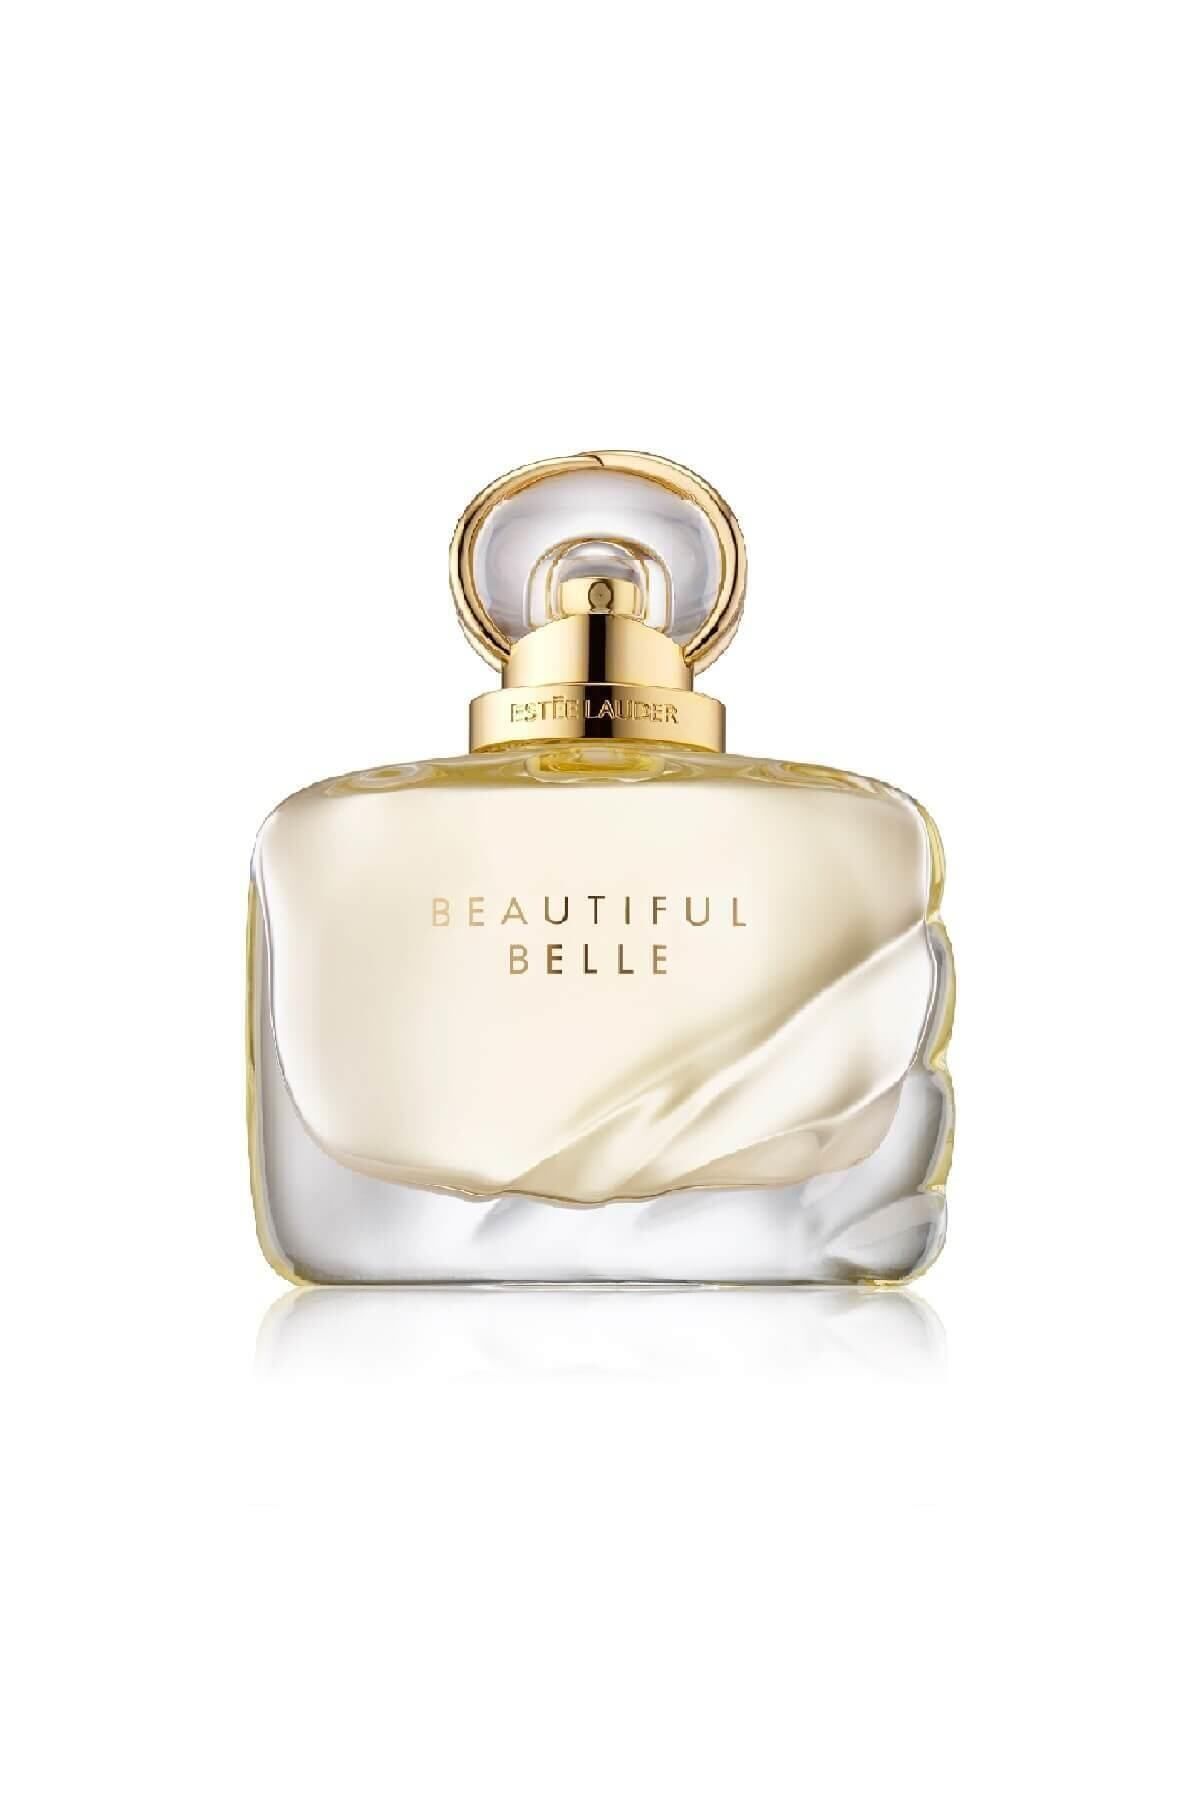 Estee Lauder Beautiful Belle Kadın Parfüm Edp - 100ml